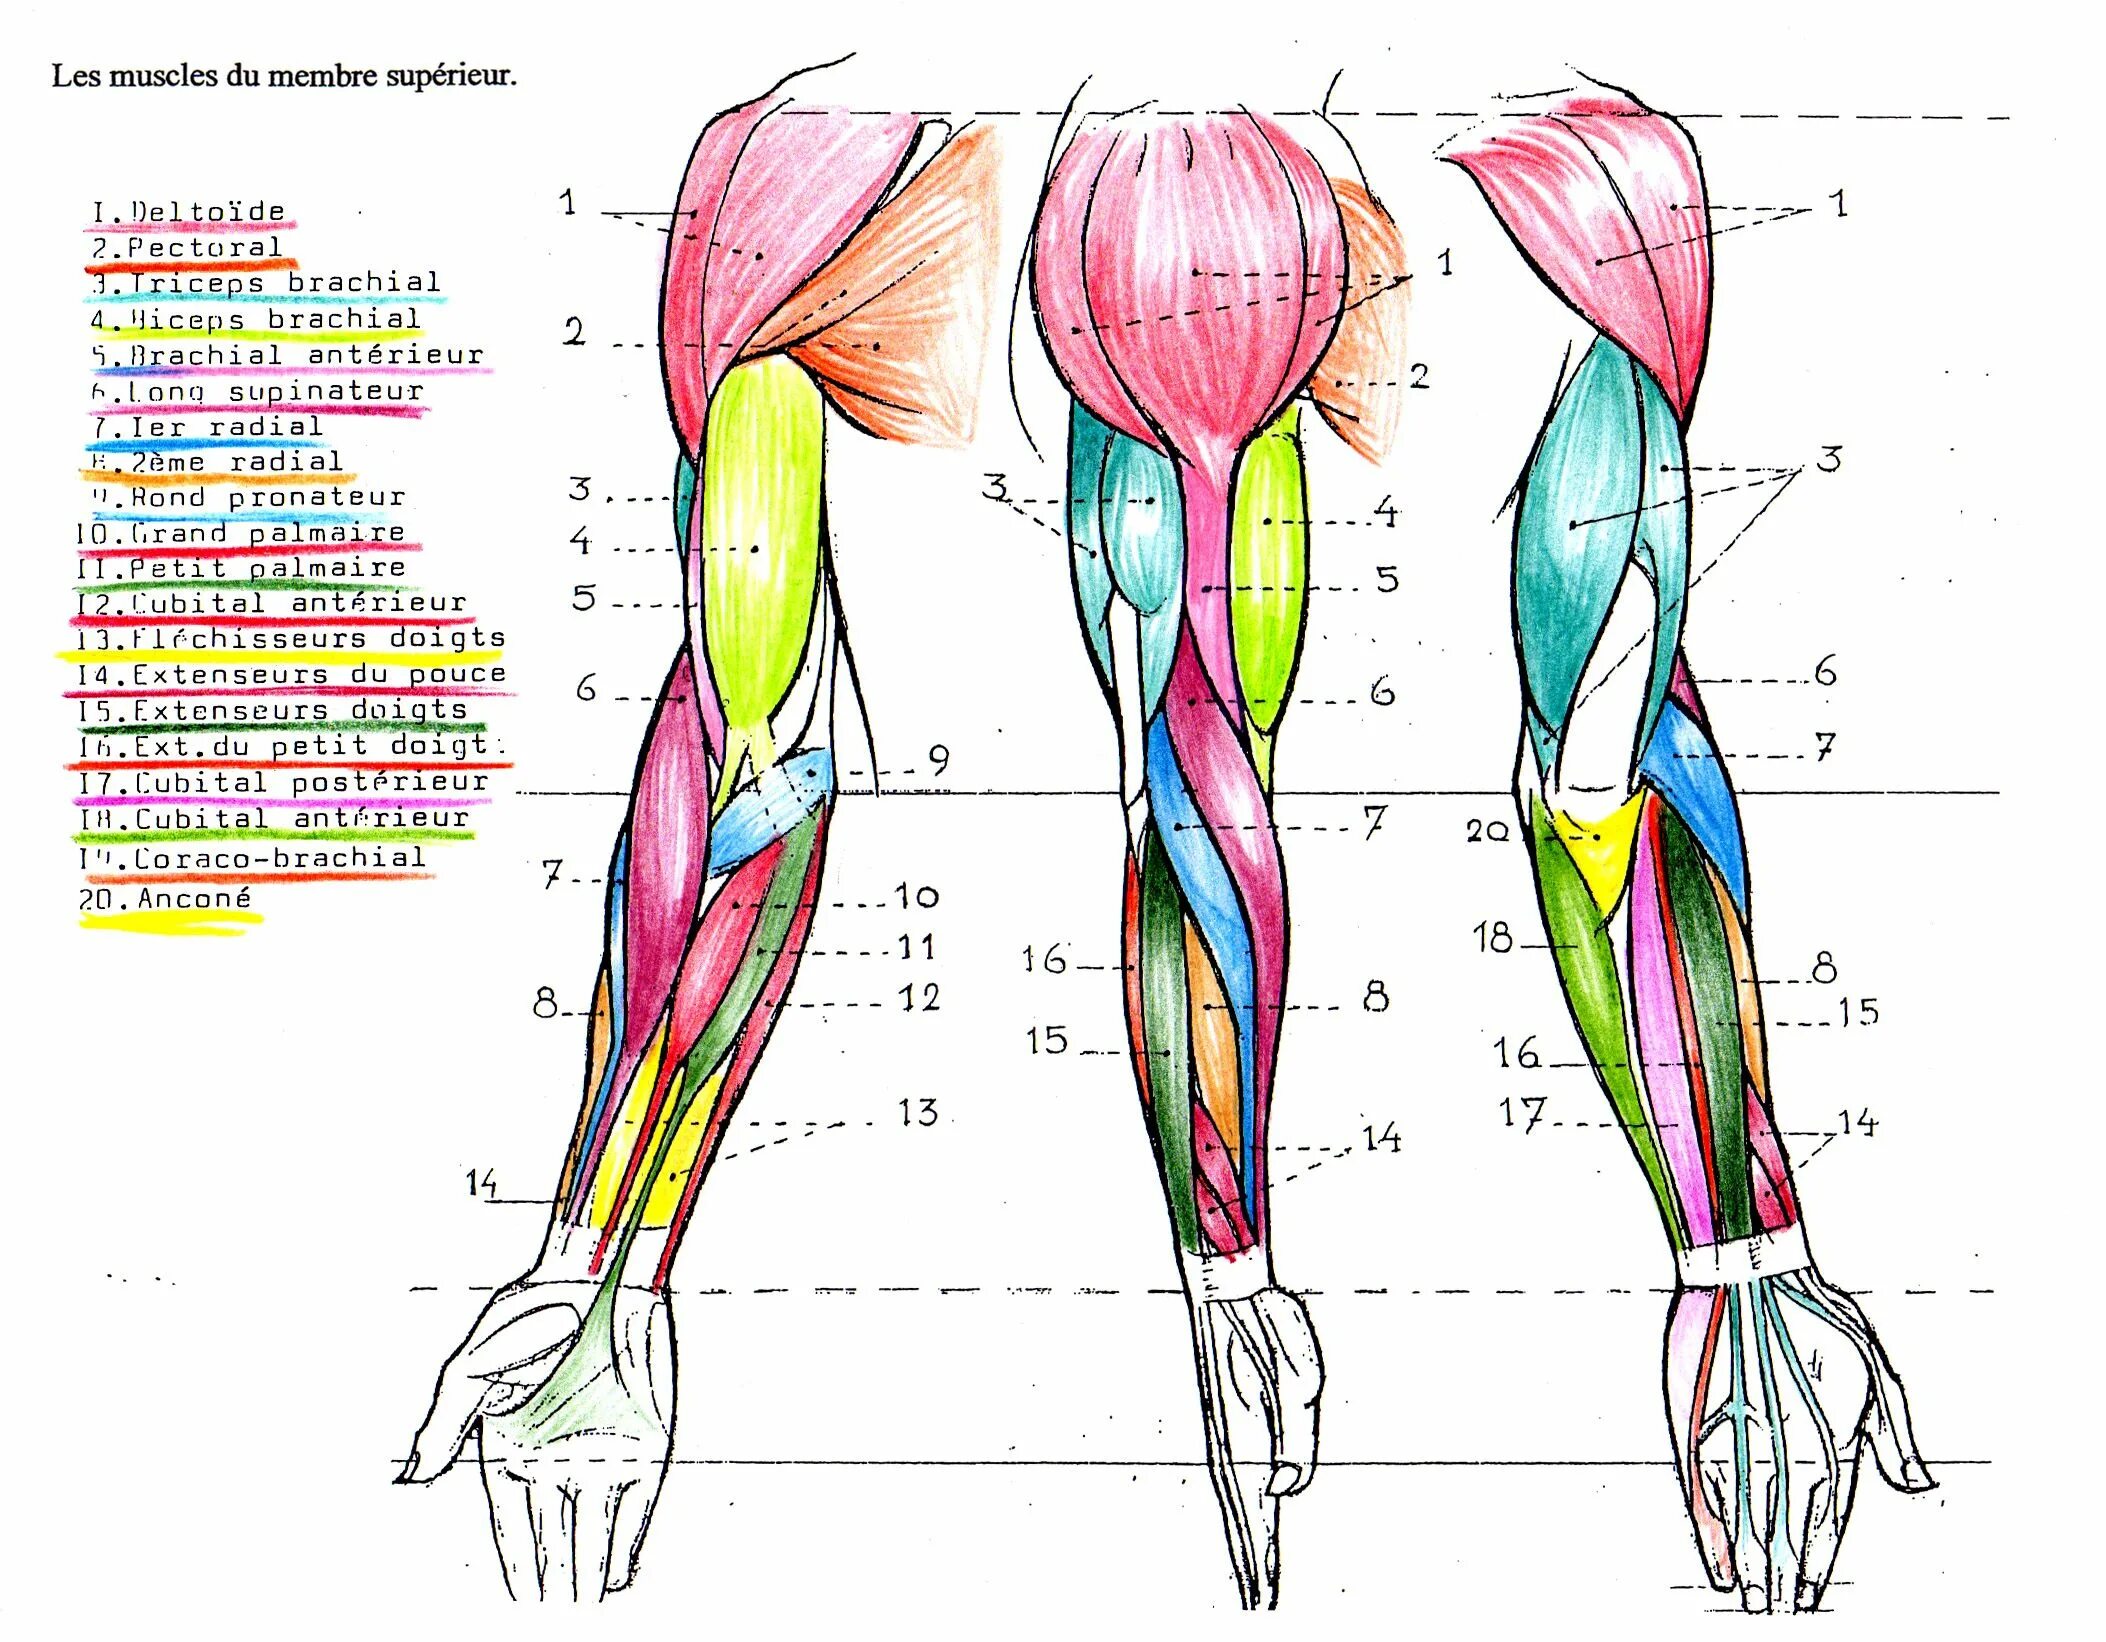 Мышцы руки анатомия человека. Мышцы руки схема. Рука анатомия строение мышц. Мышцы руки анатомия человека картинки.